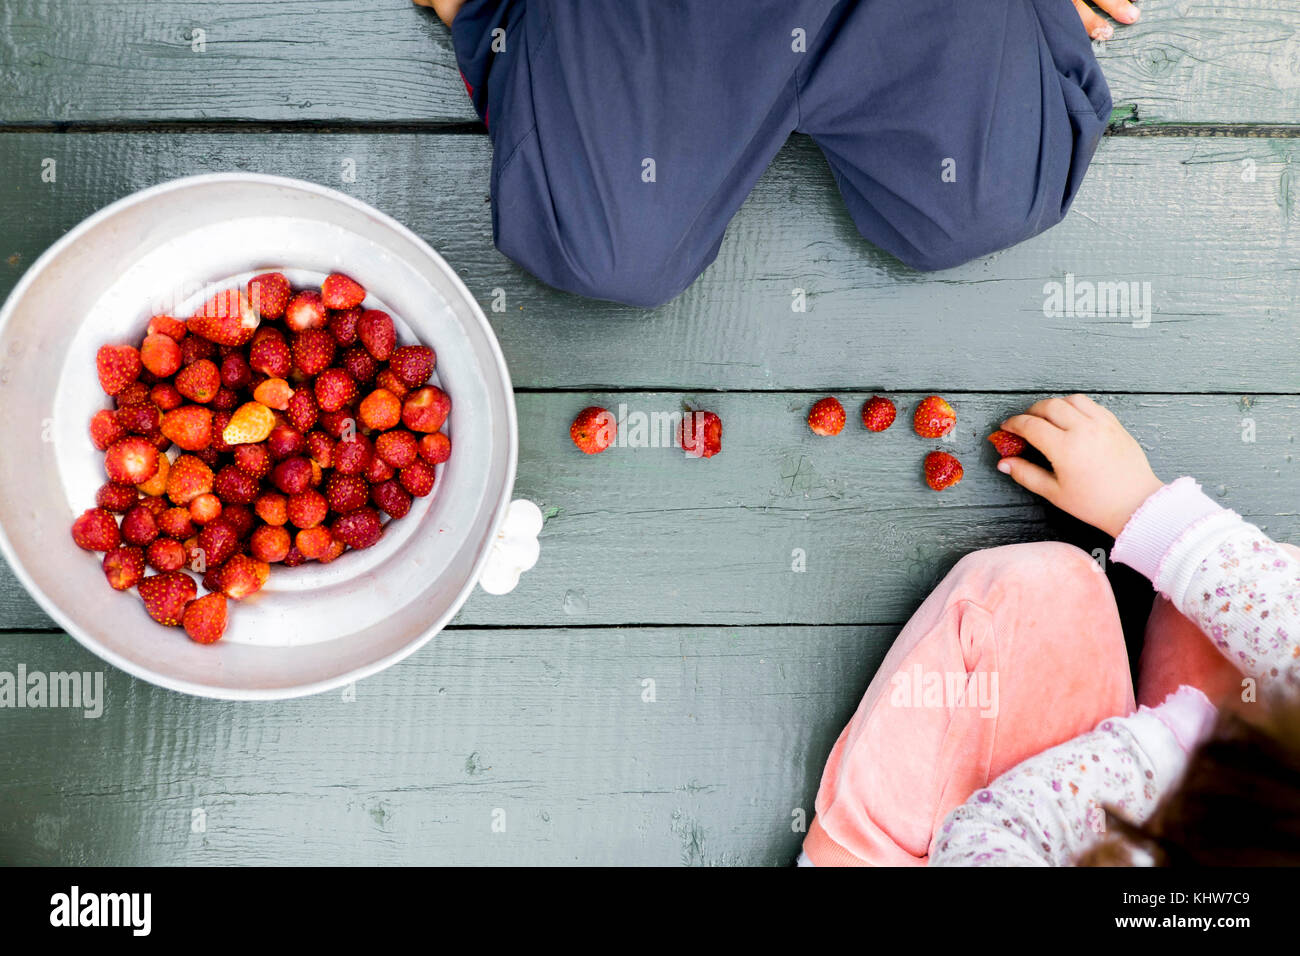 Dos niños sentados sobre un piso de madera, un tazón de fresas junto a ellos, vista superior Foto de stock